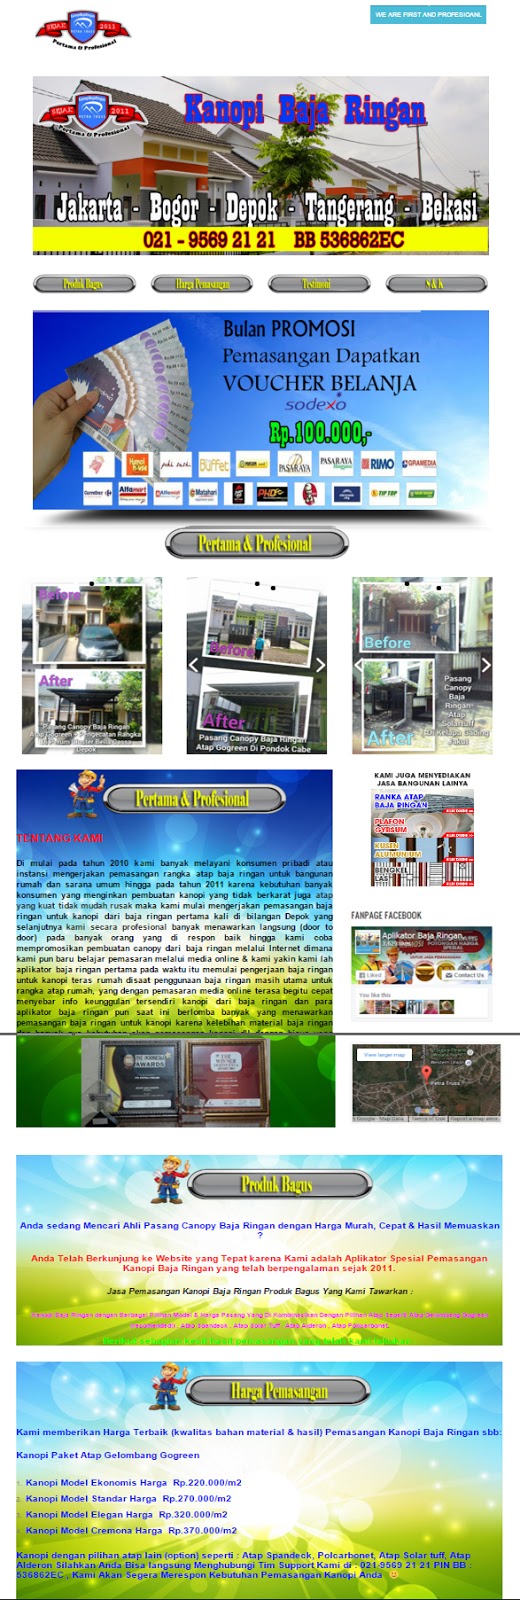 Jasa Pembuatan Website Murah Di Medan